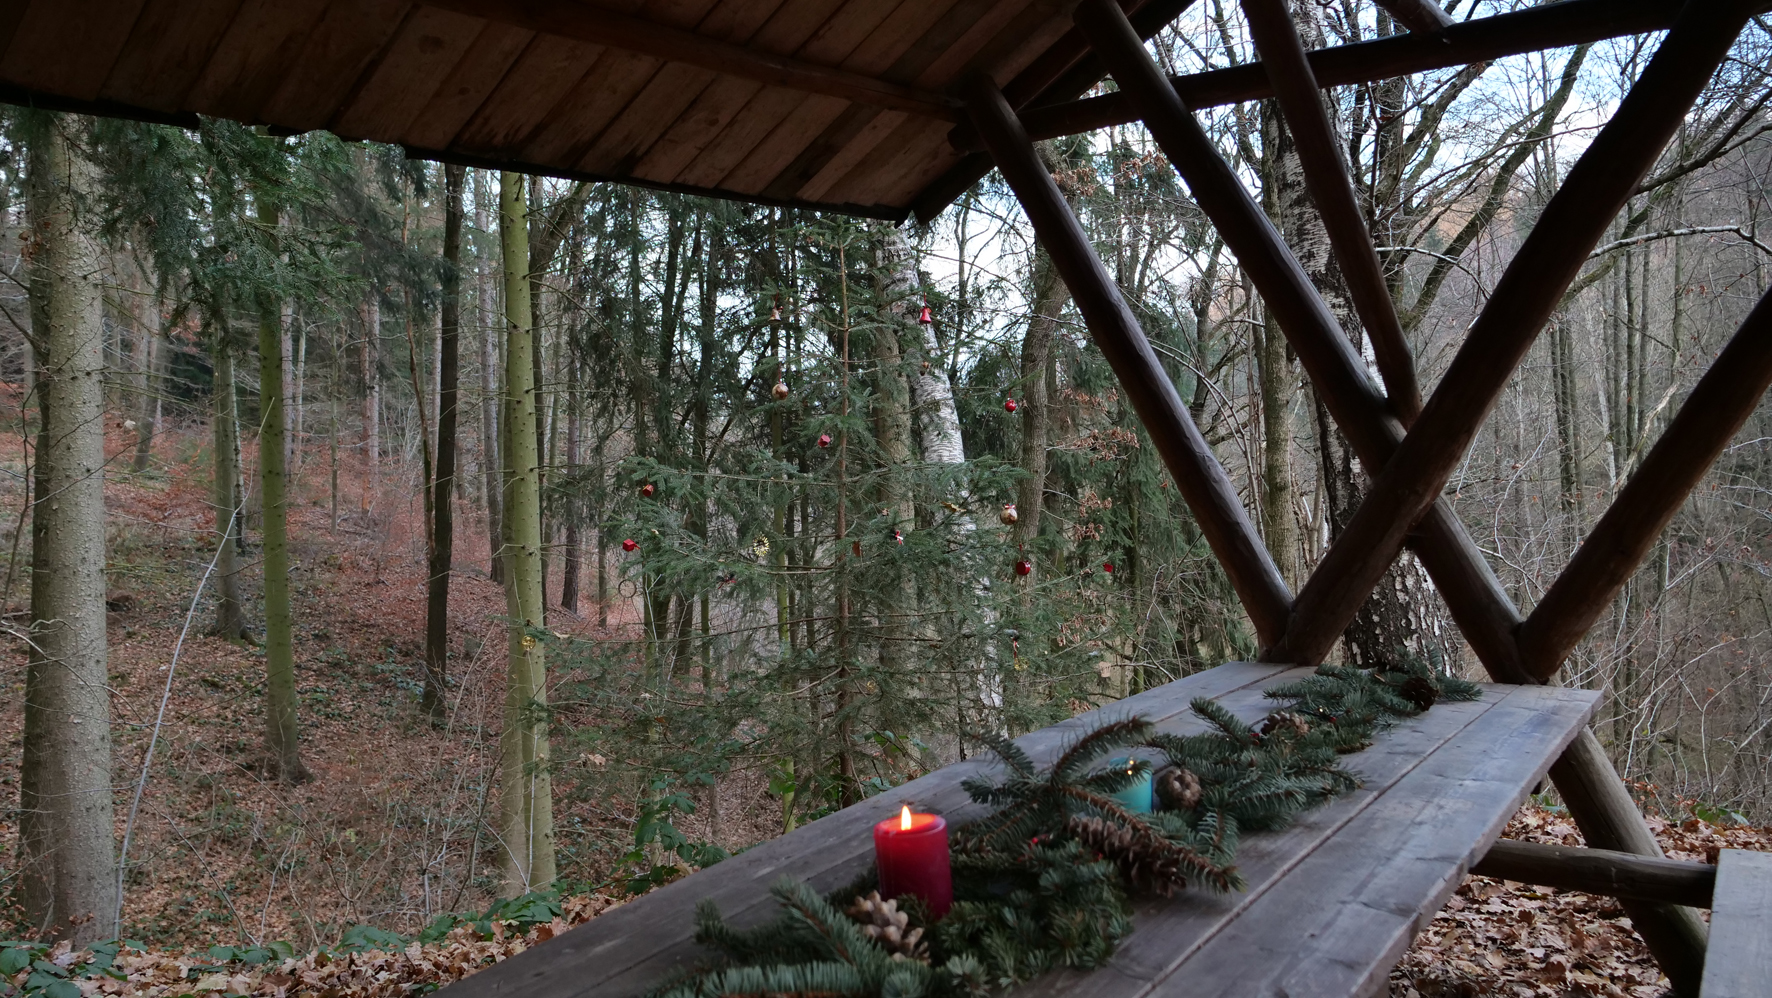 Überdachter Tisch im Wald, der mit Nadelzweigen und einer roten, brennenden Kerze geschmückt ist.